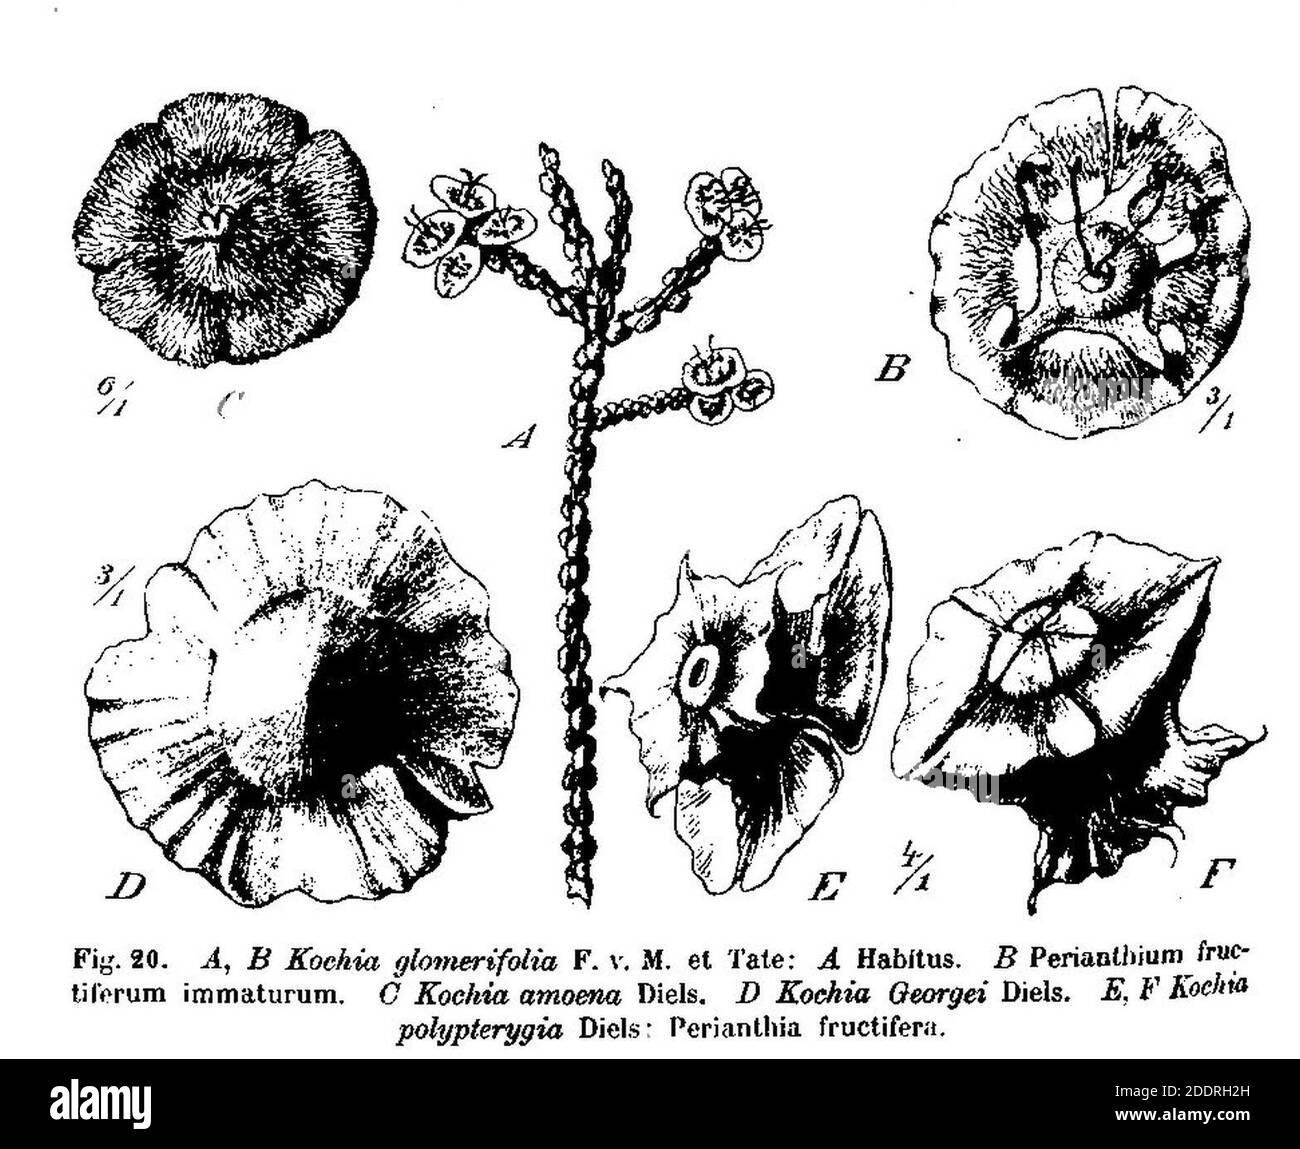 Kochia glomerifolia, Kochia amoena, Kochia georgei, Kochia polypterygia. Stock Photo